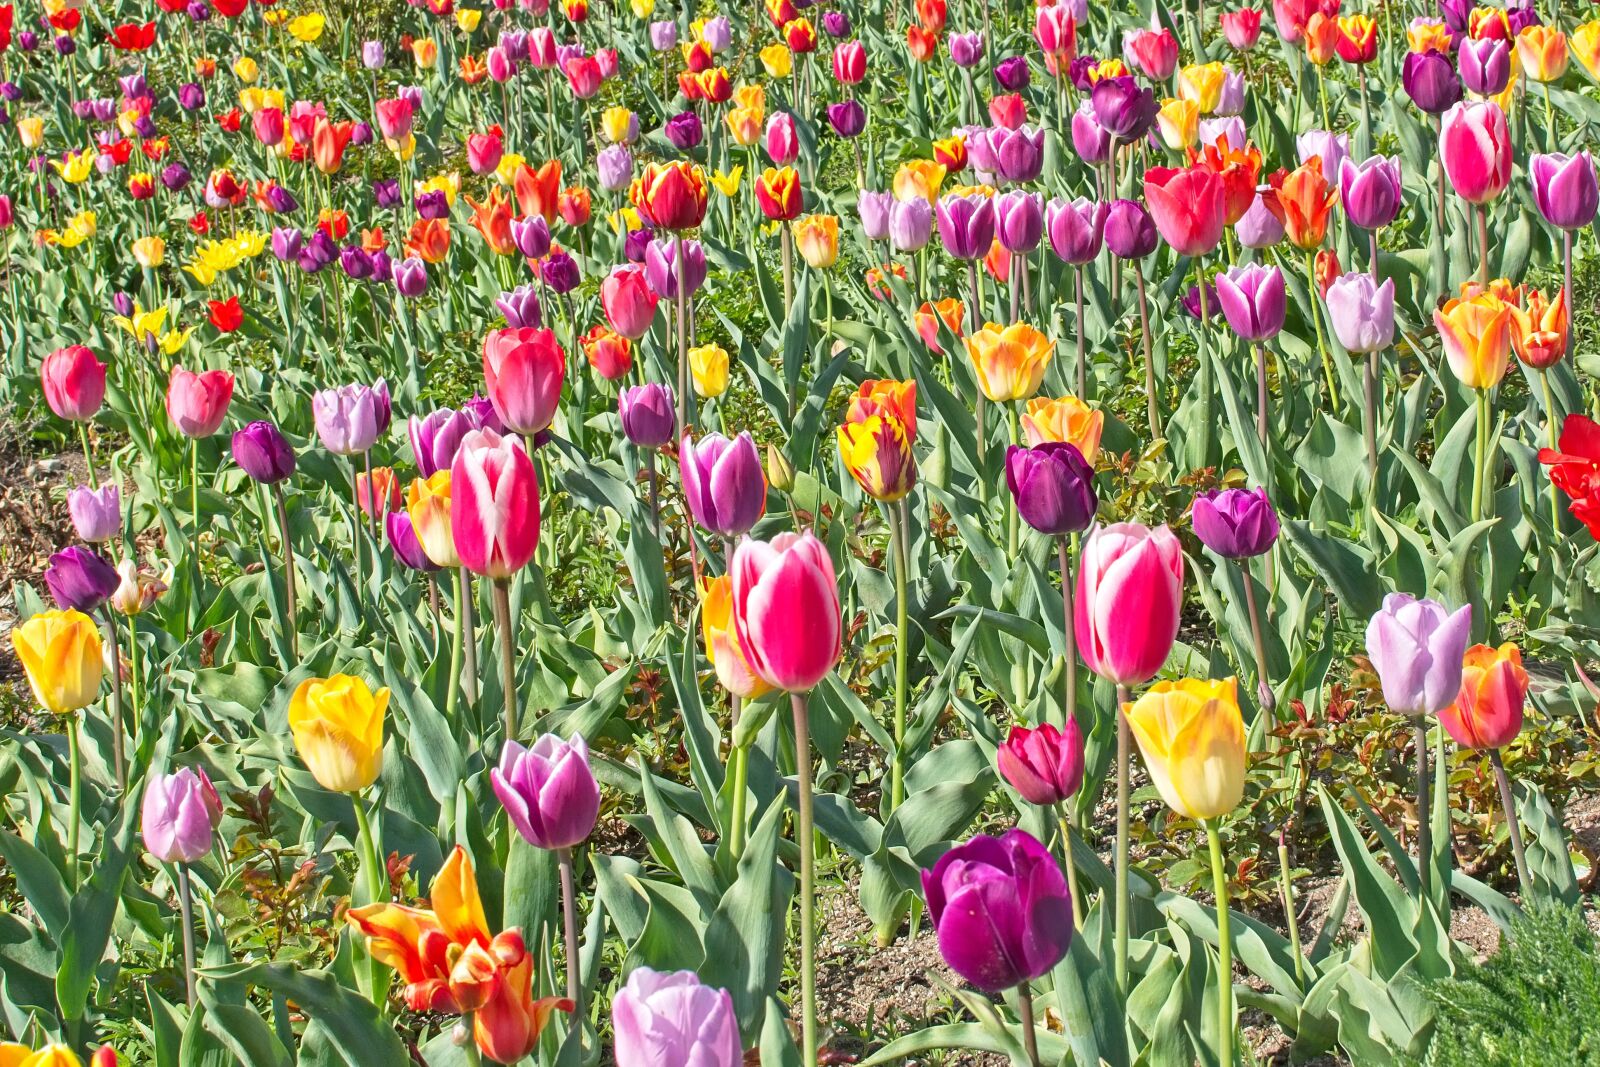 Nikon AF-S DX Nikkor 35mm F1.8G sample photo. Tulips, tulip field, spring photography